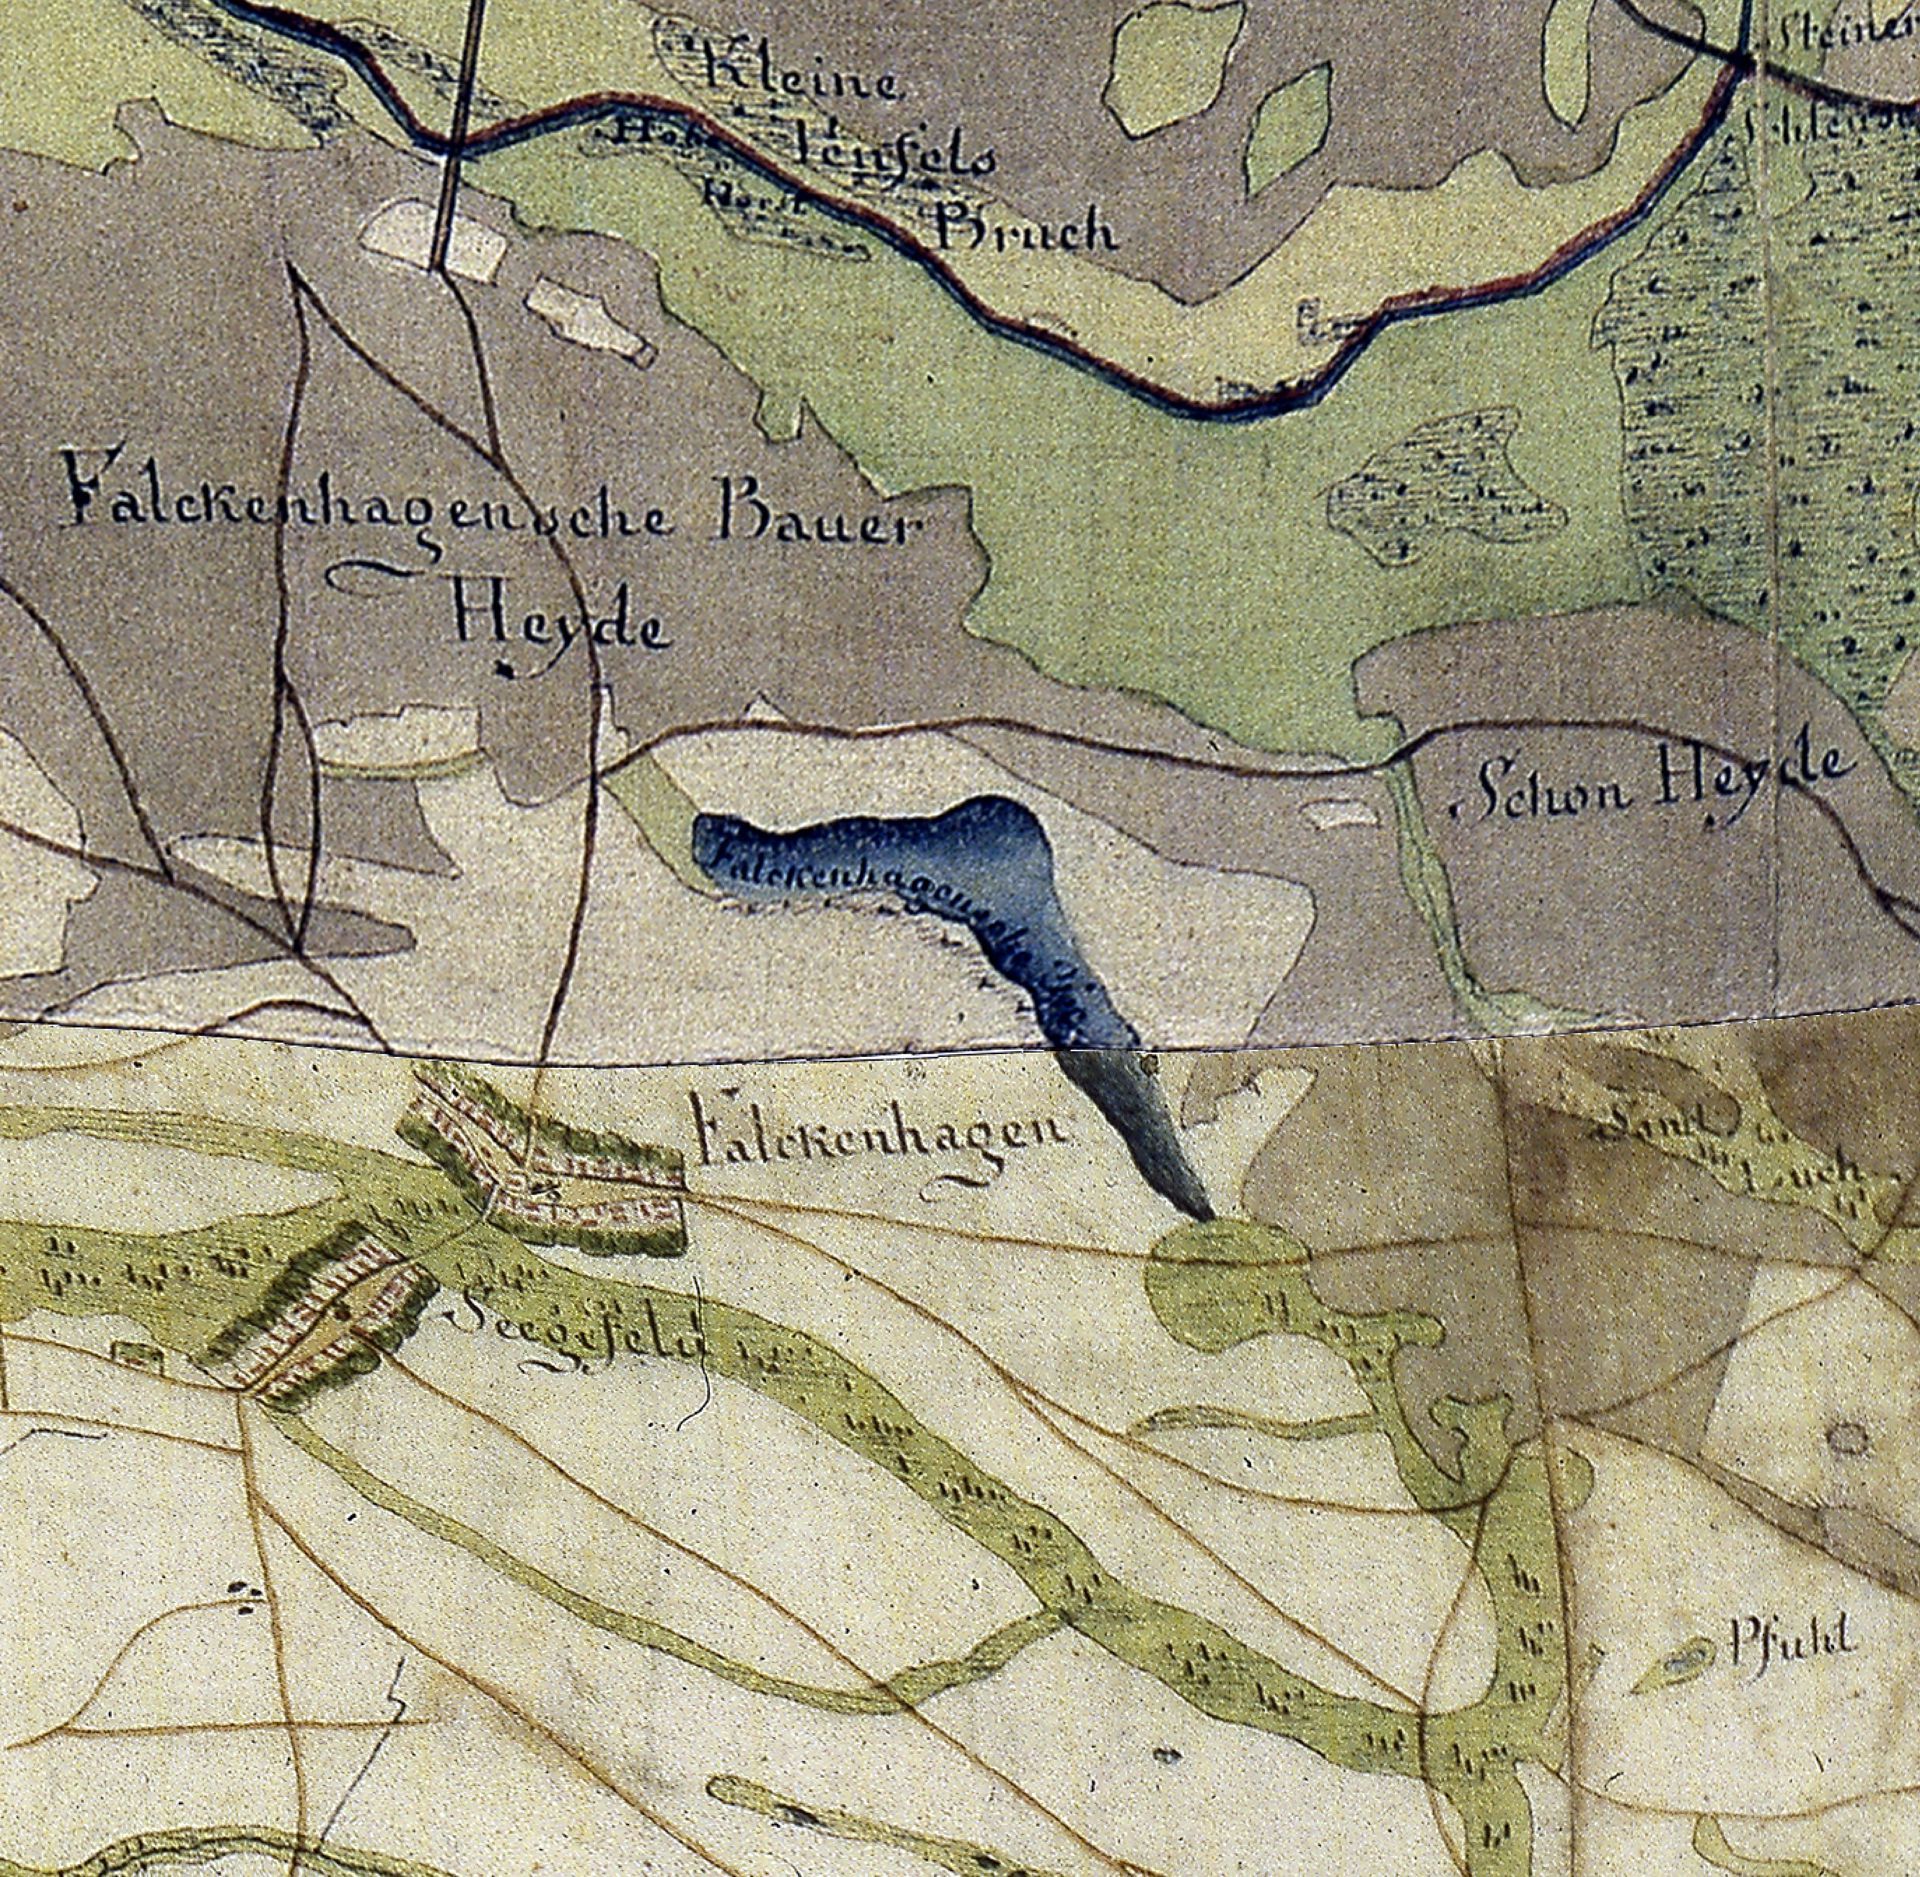 Plan historique du Falkenhagener See